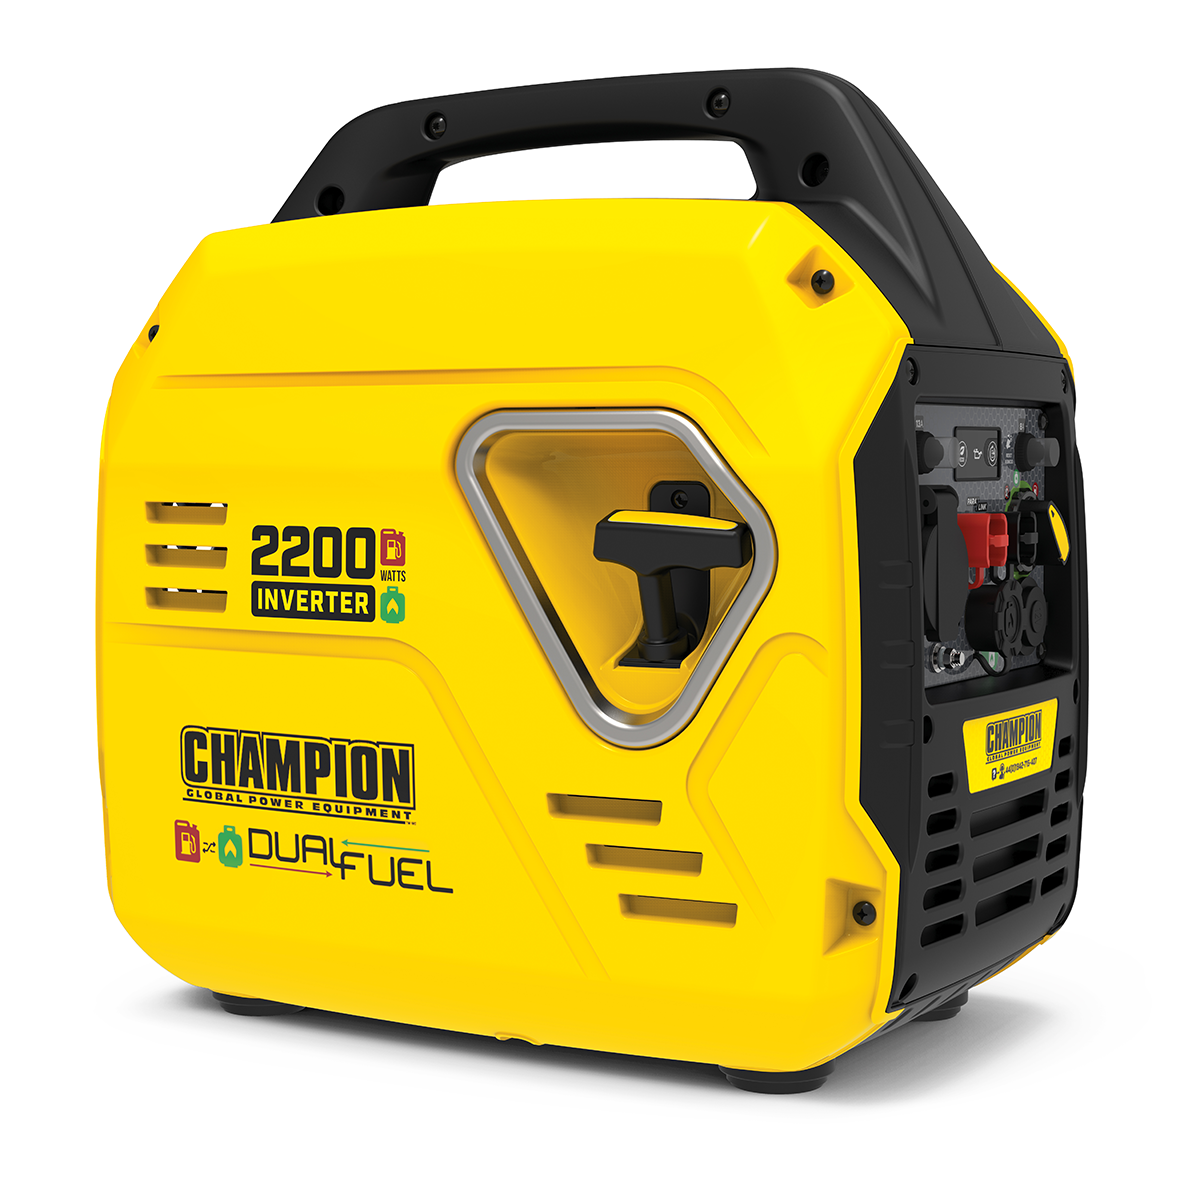 Champion 92001i-DF Dual Fuel Inverter Generator